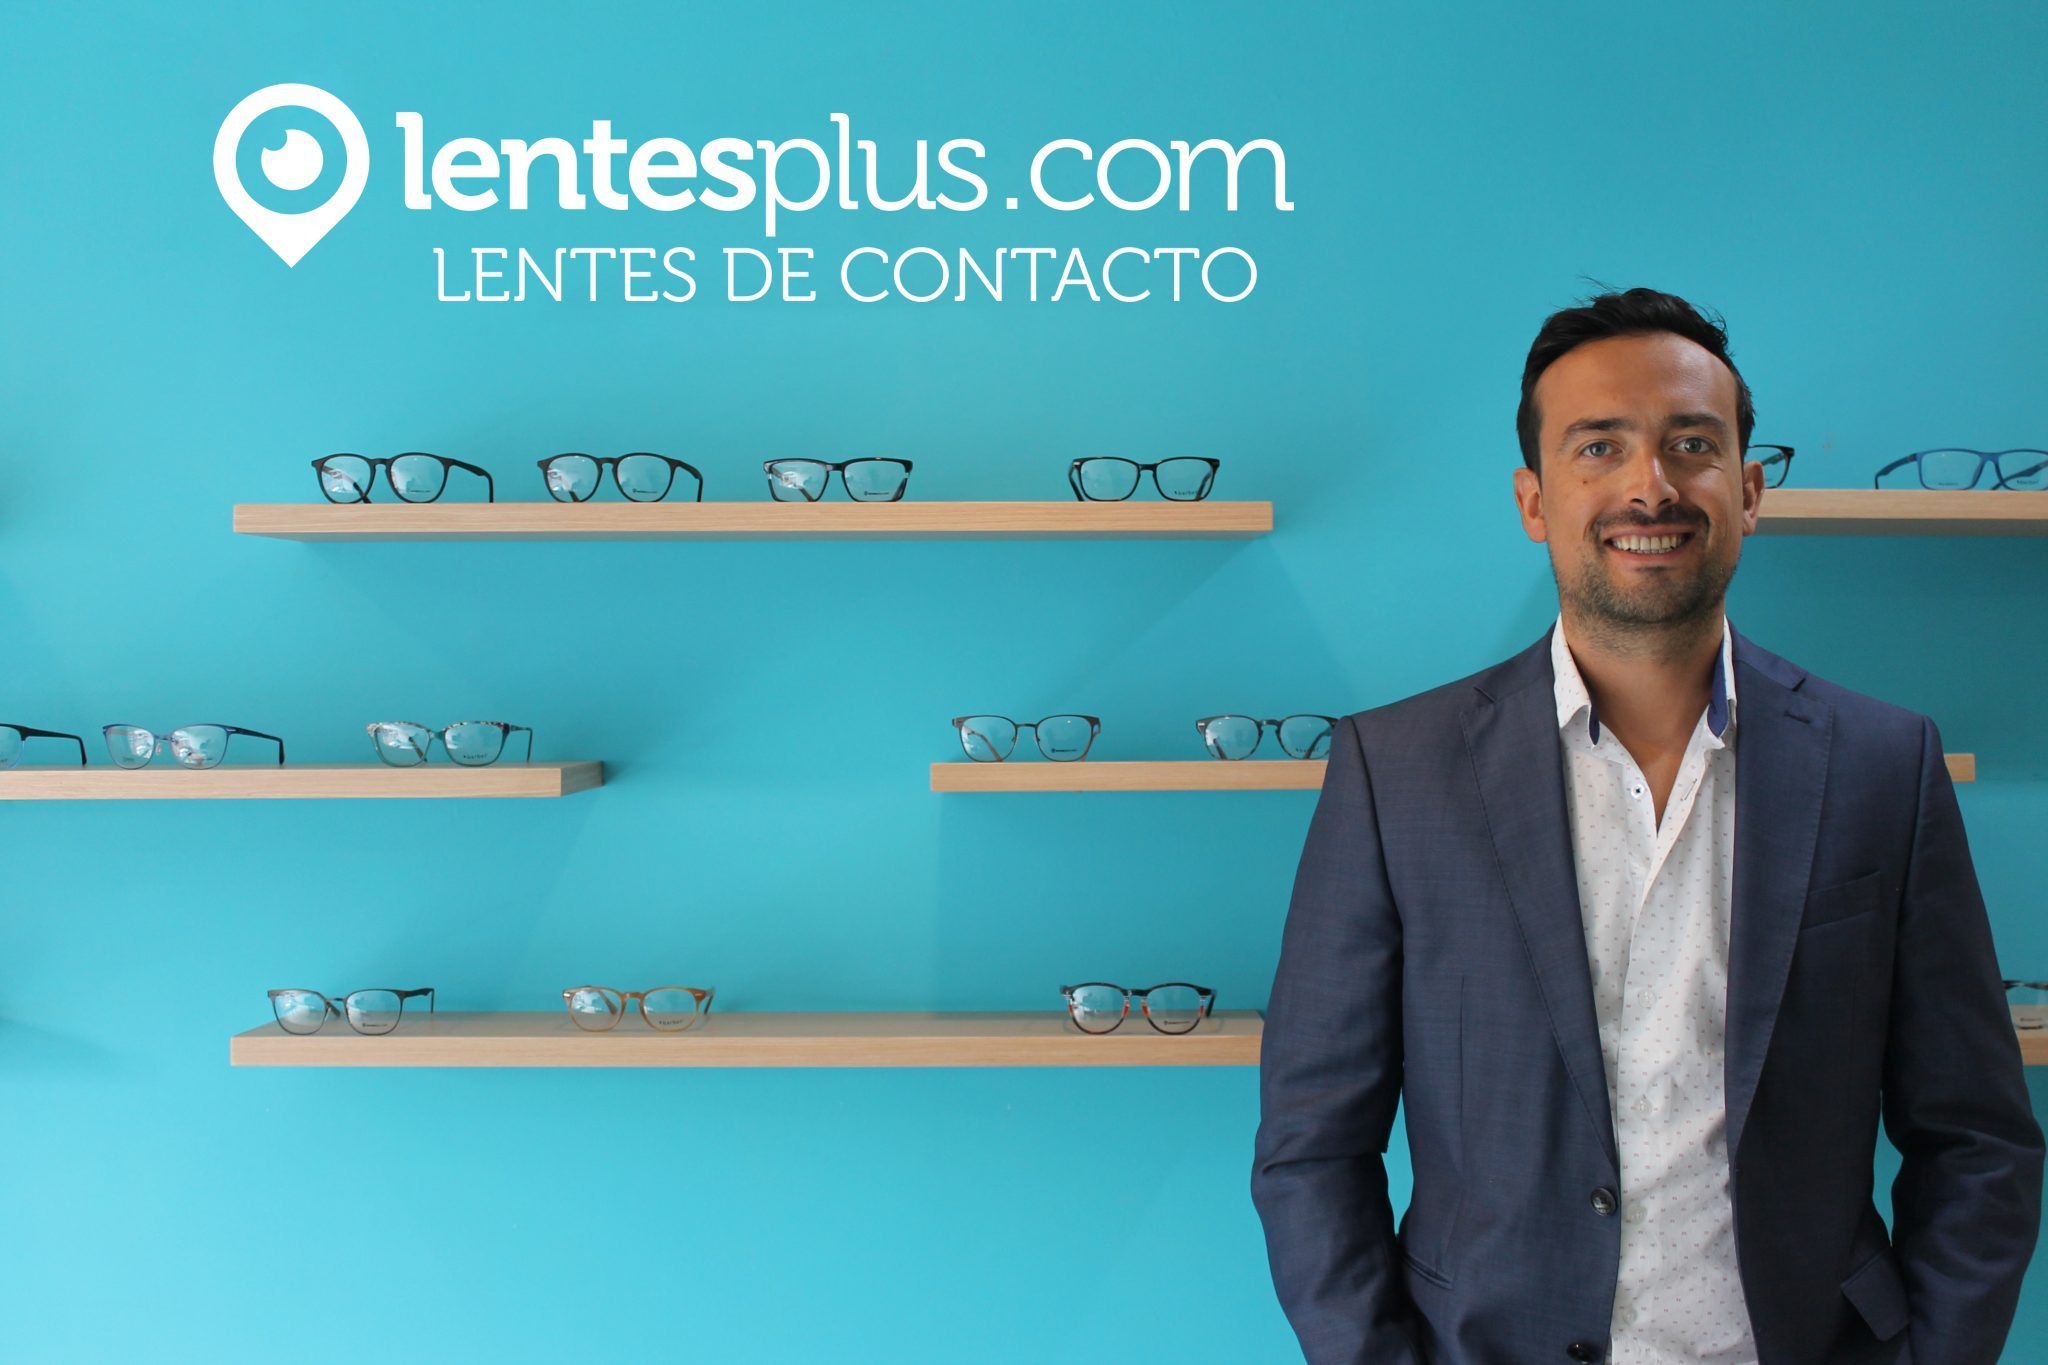 Diego Mariño - CEO y Co-Fundador de Lentesplus.com